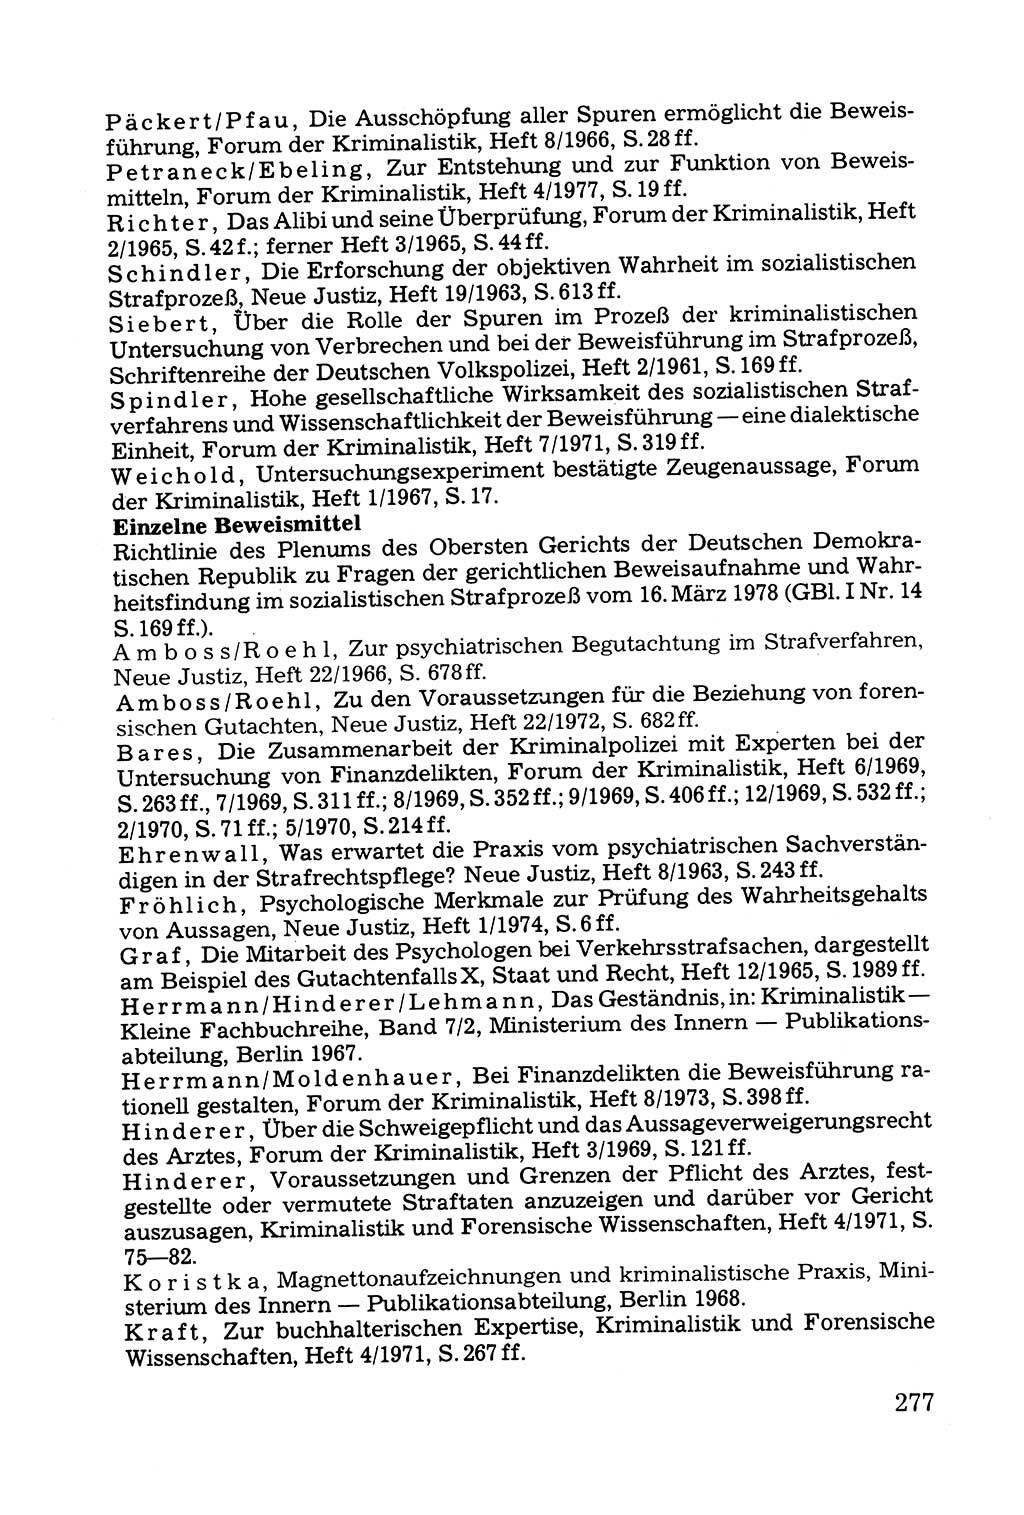 Grundfragen der Beweisführung im Ermittlungsverfahren [Deutsche Demokratische Republik (DDR)] 1980, Seite 277 (Bws.-Fhrg. EV DDR 1980, S. 277)